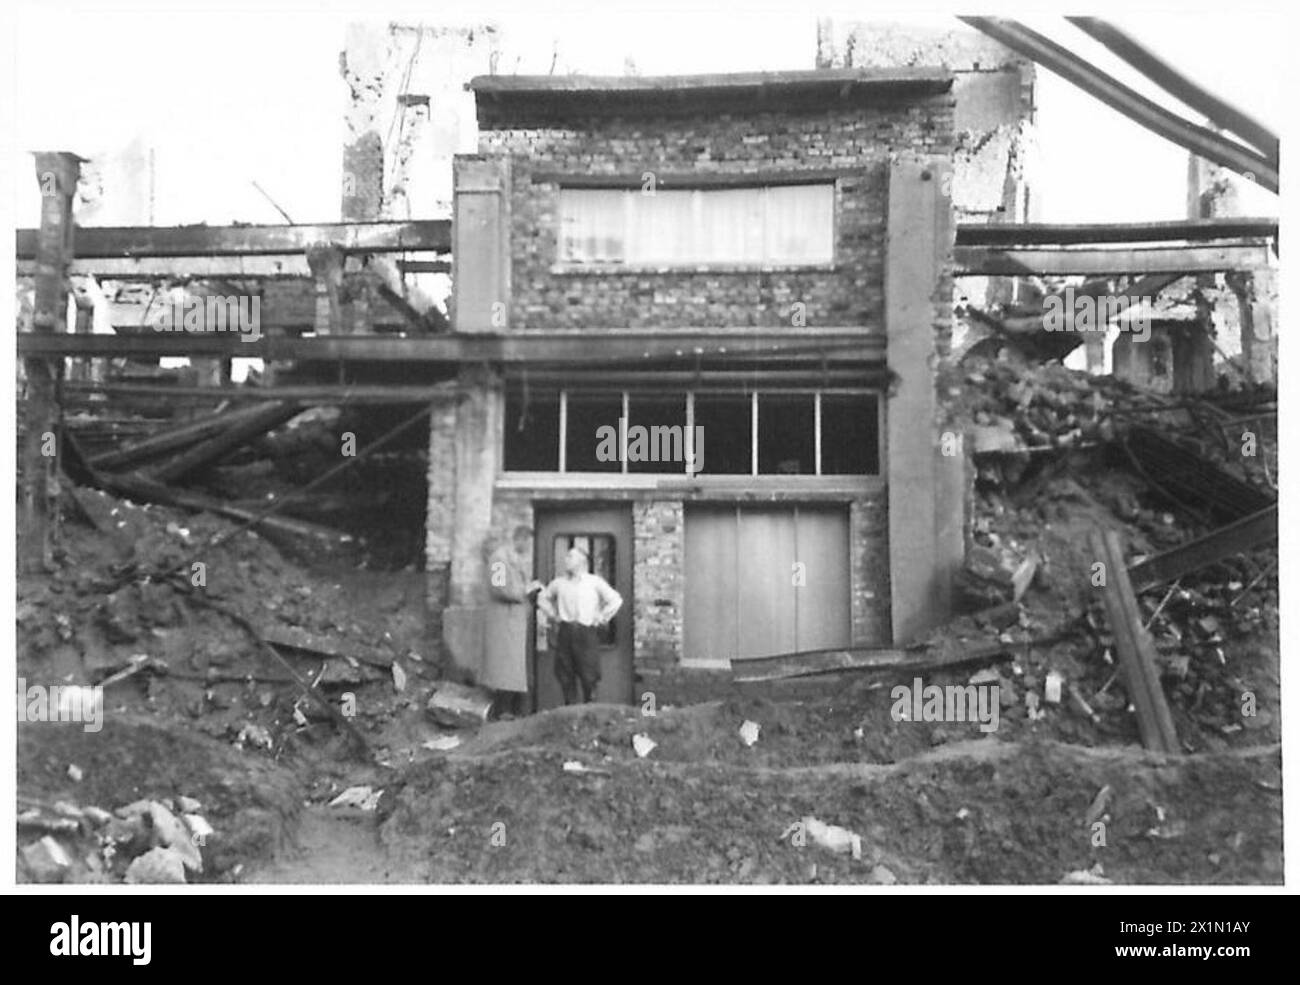 DIE PRODUKTION Einer ZEITUNG IN DEUTSCHLAND - Chefreporter Richard Kraske - befragt Herrn Grundmann, einen Dortmunder Bürger, der zweimal bombardiert wurde und nun ein Haus innerhalb der Mauern eines anderen Gebäudes, der britischen Rheinarmee, gebaut hat Stockfoto